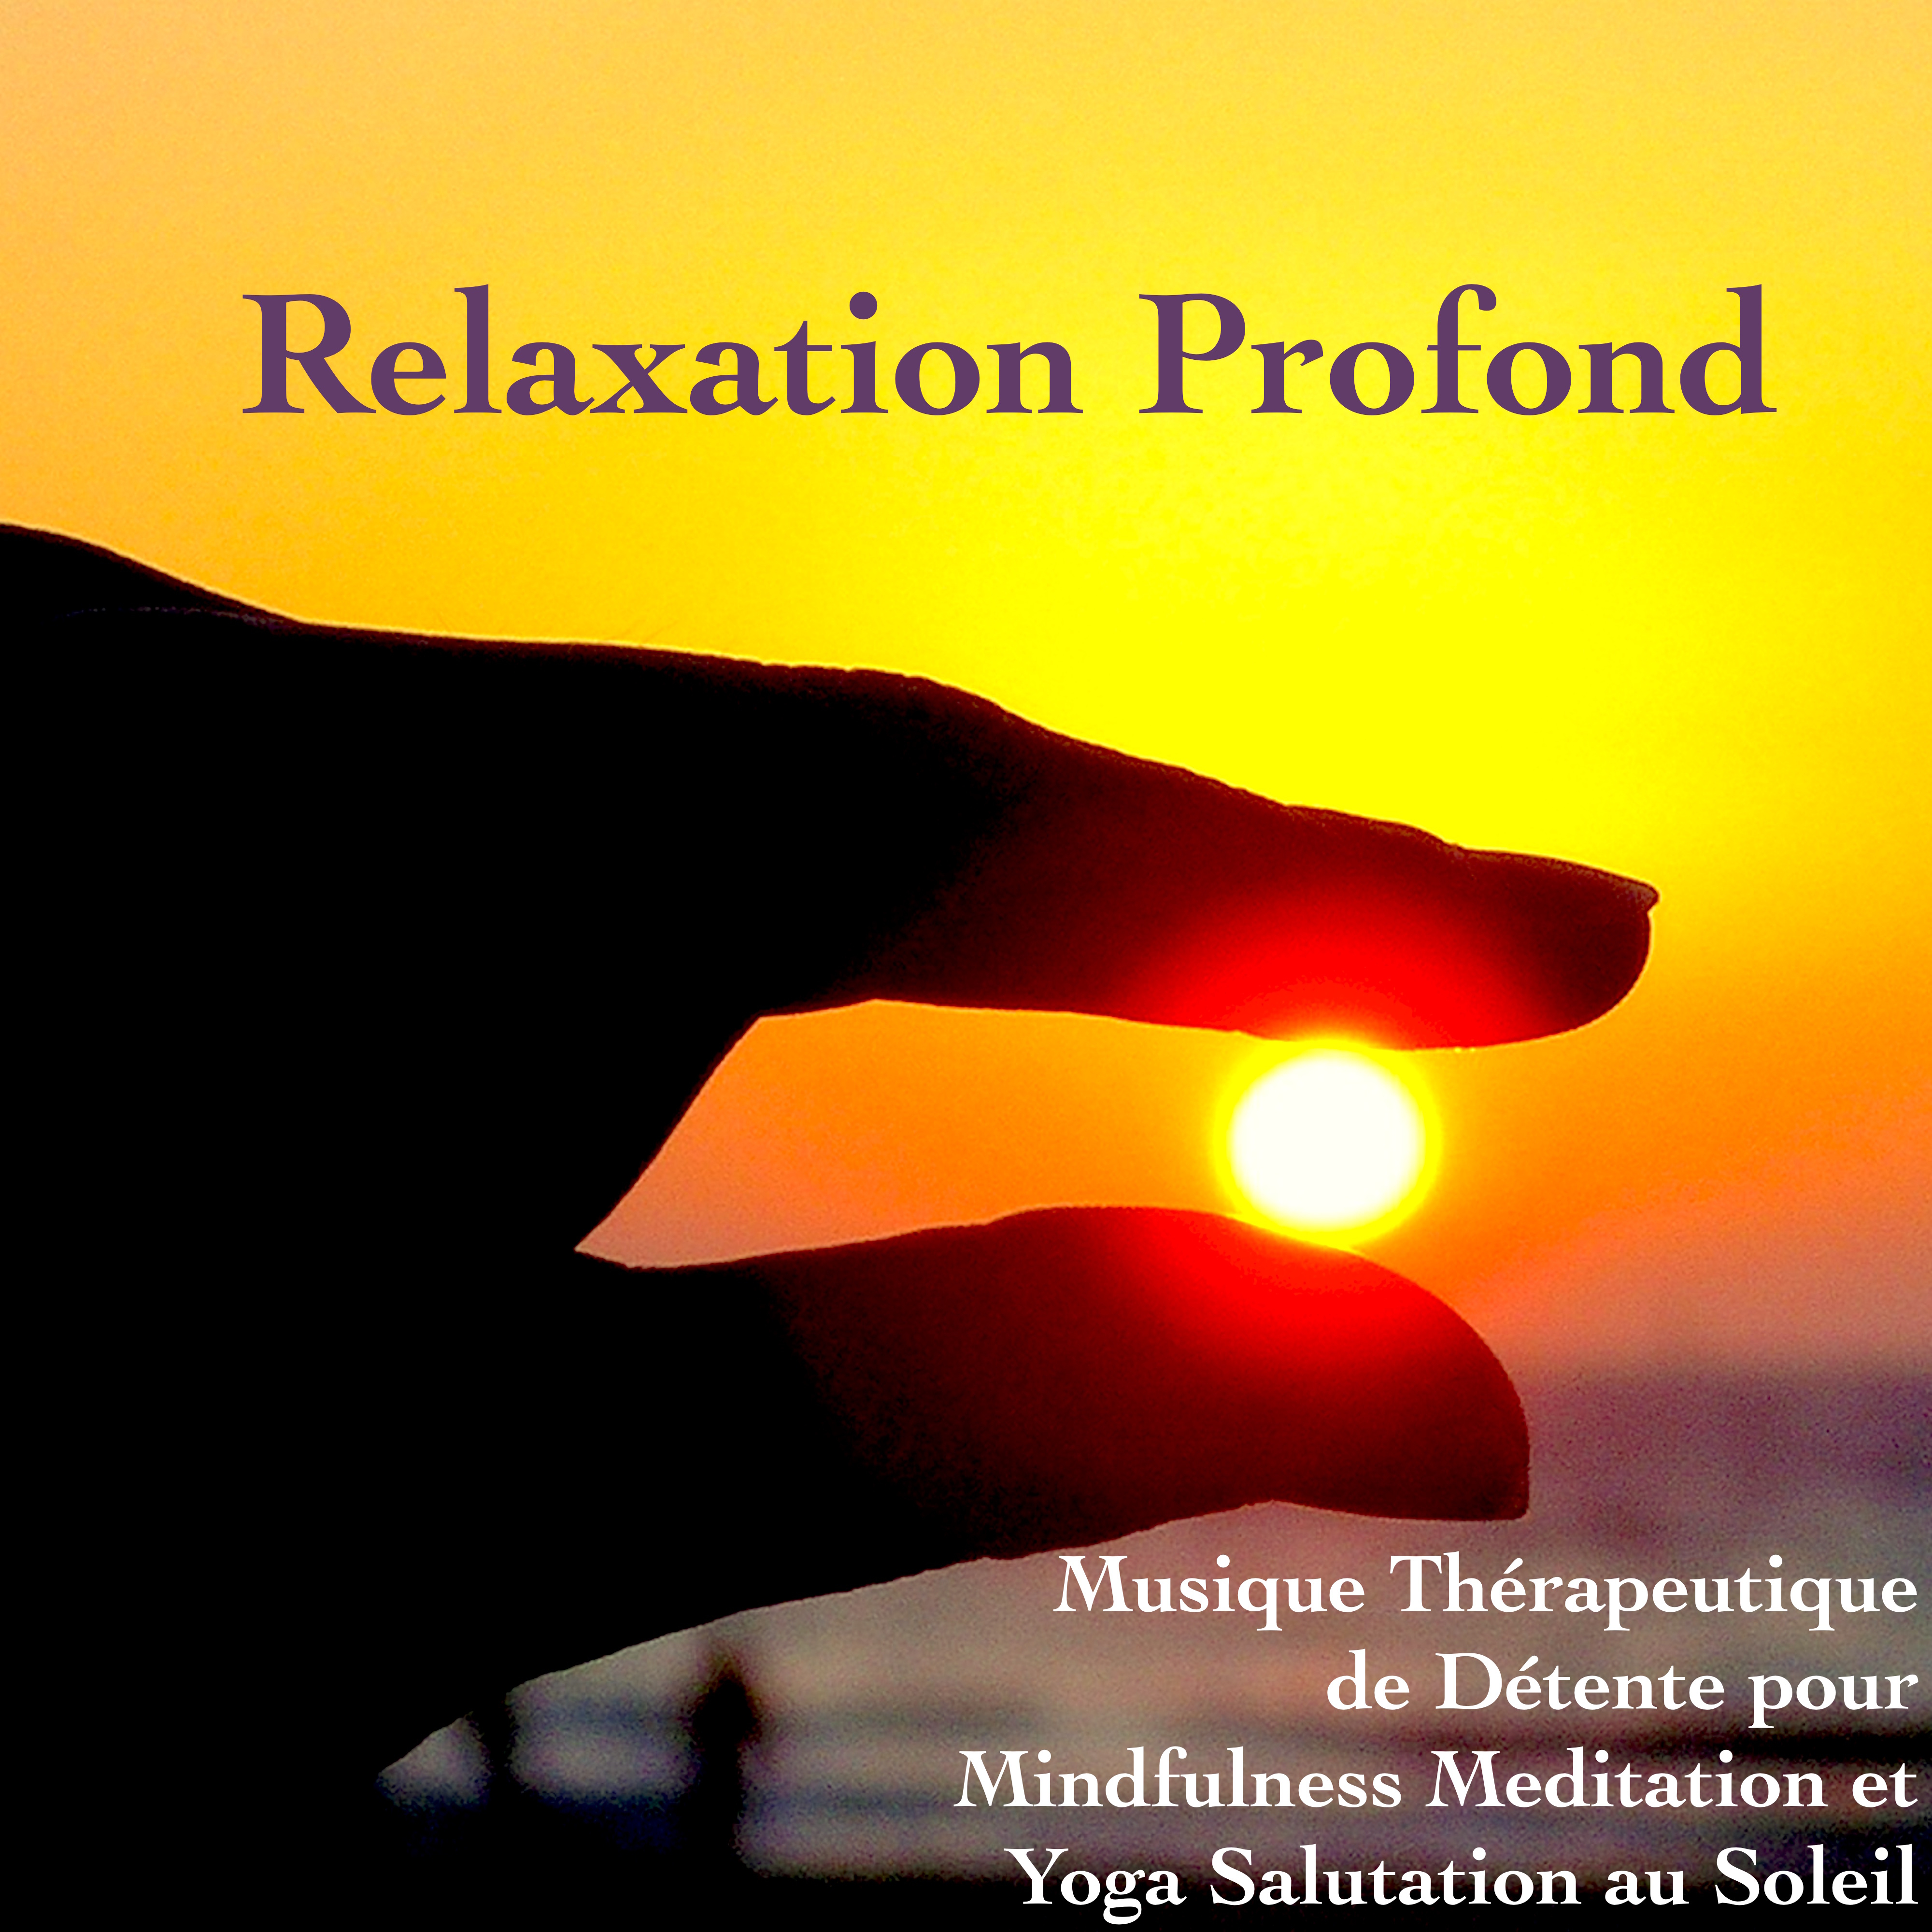 Relaxation Profond: Musique Thérapeutique de Détente pour Mindfulness Meditation et Yoga Salutation au Soleil  Salutation au Soleil